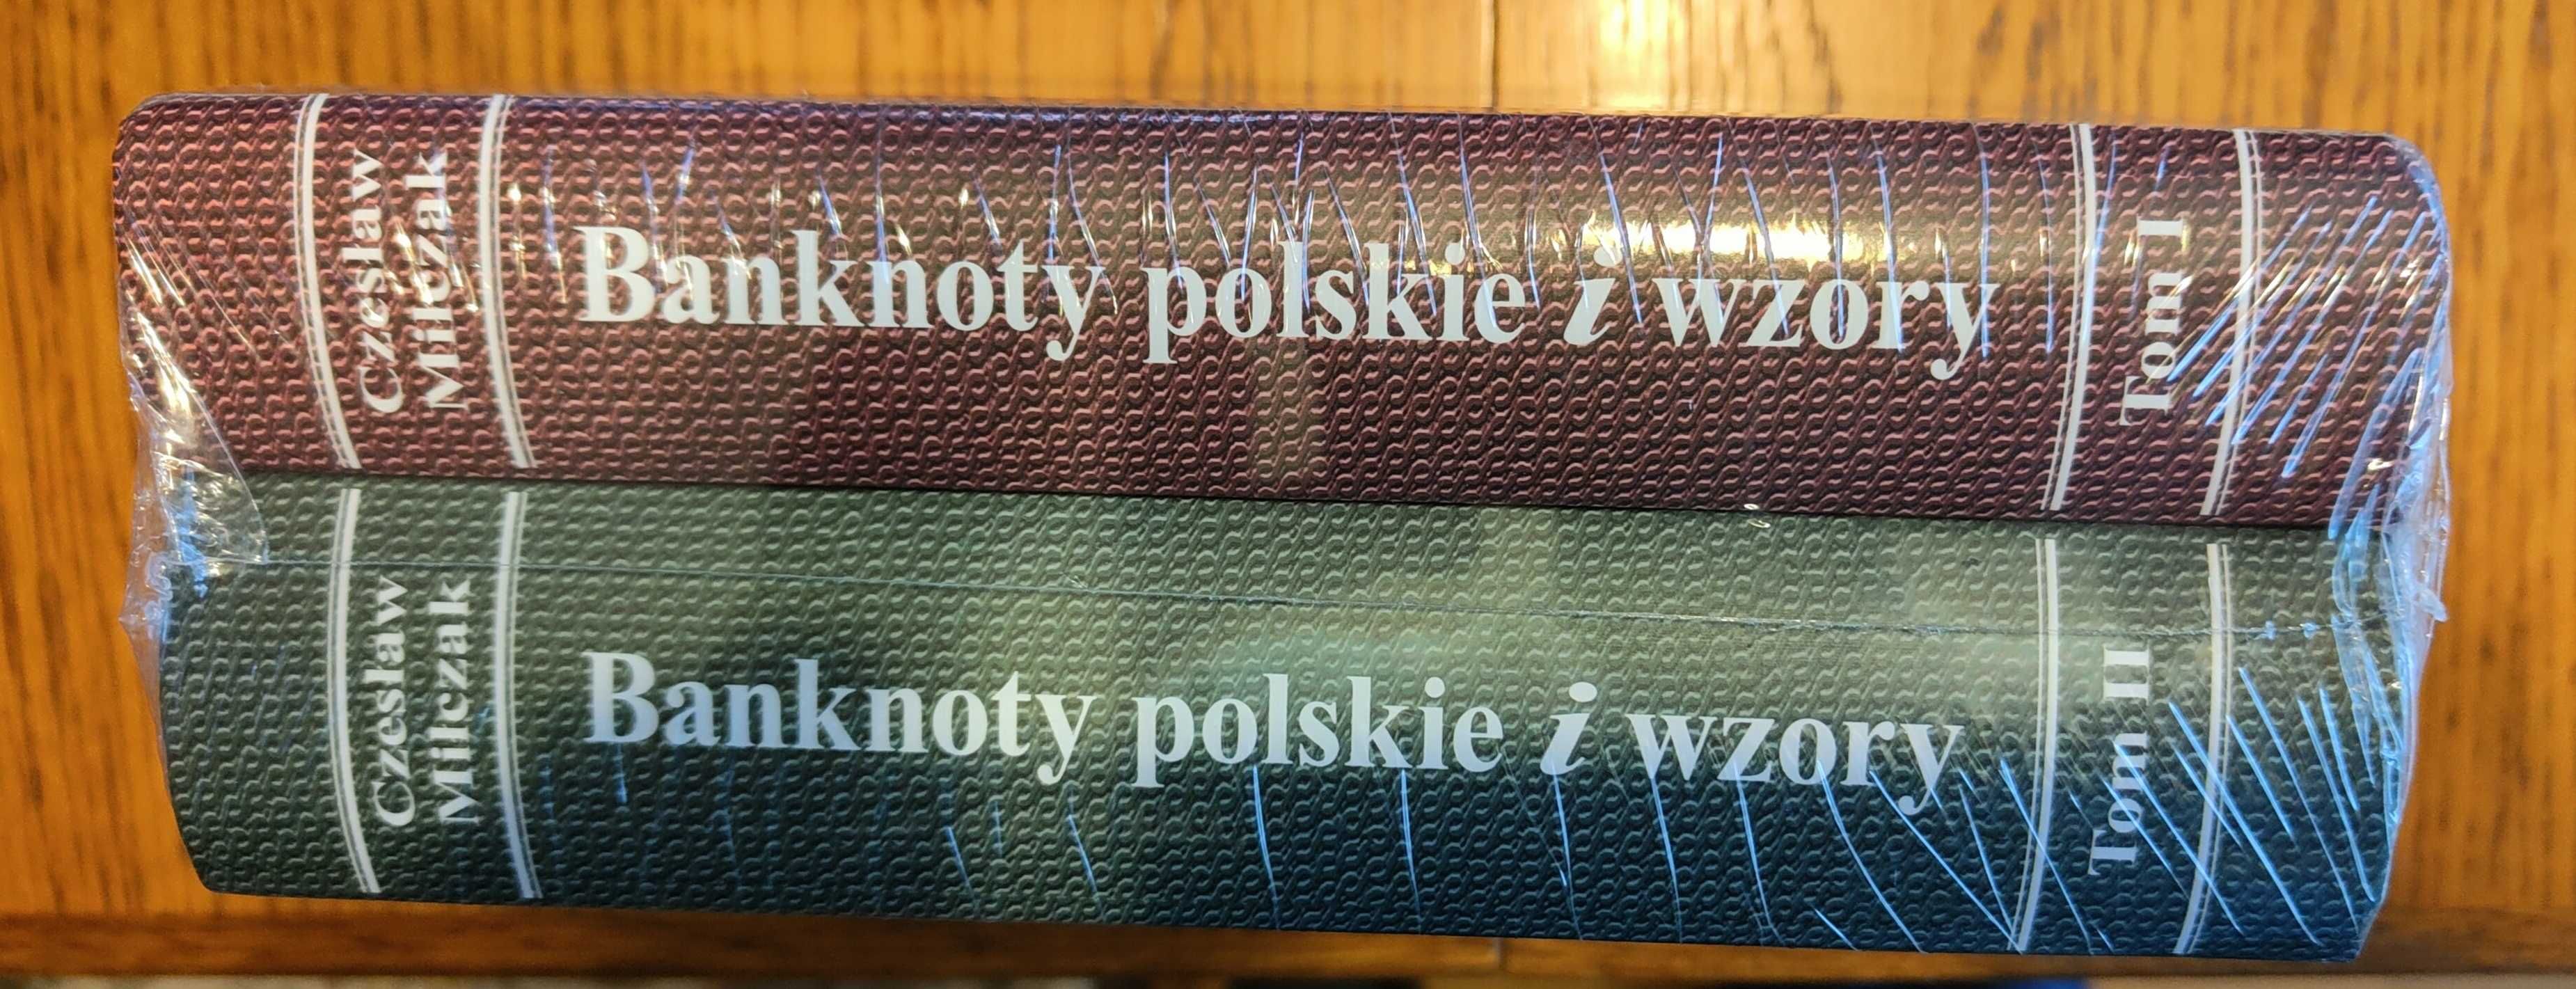 Banknoty polskie i wzory tom I i II Czesław Miłczak + cenniki folia